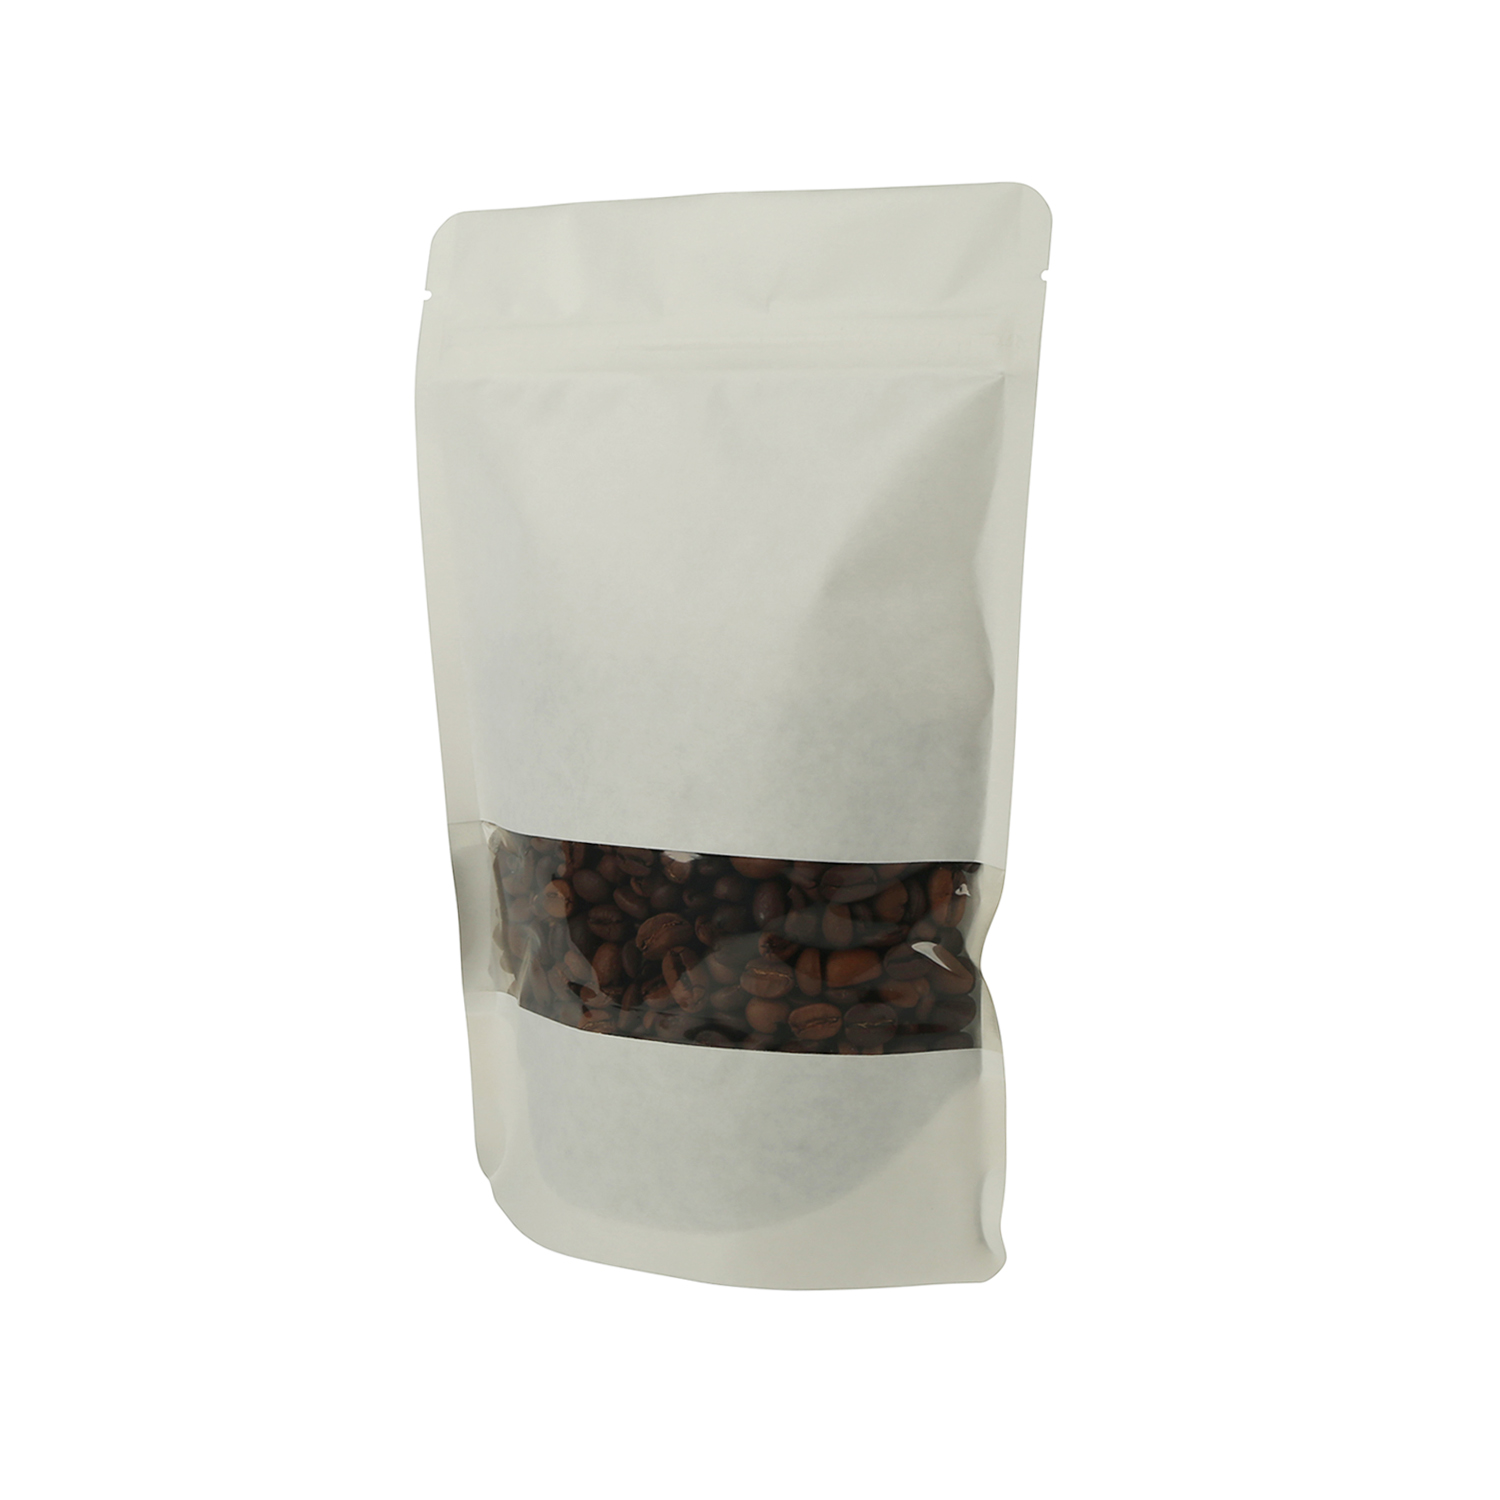 El papel Kraft blanco compostable ecológico laminado de grado alimenticio se levanta la bolsa de café con ventana